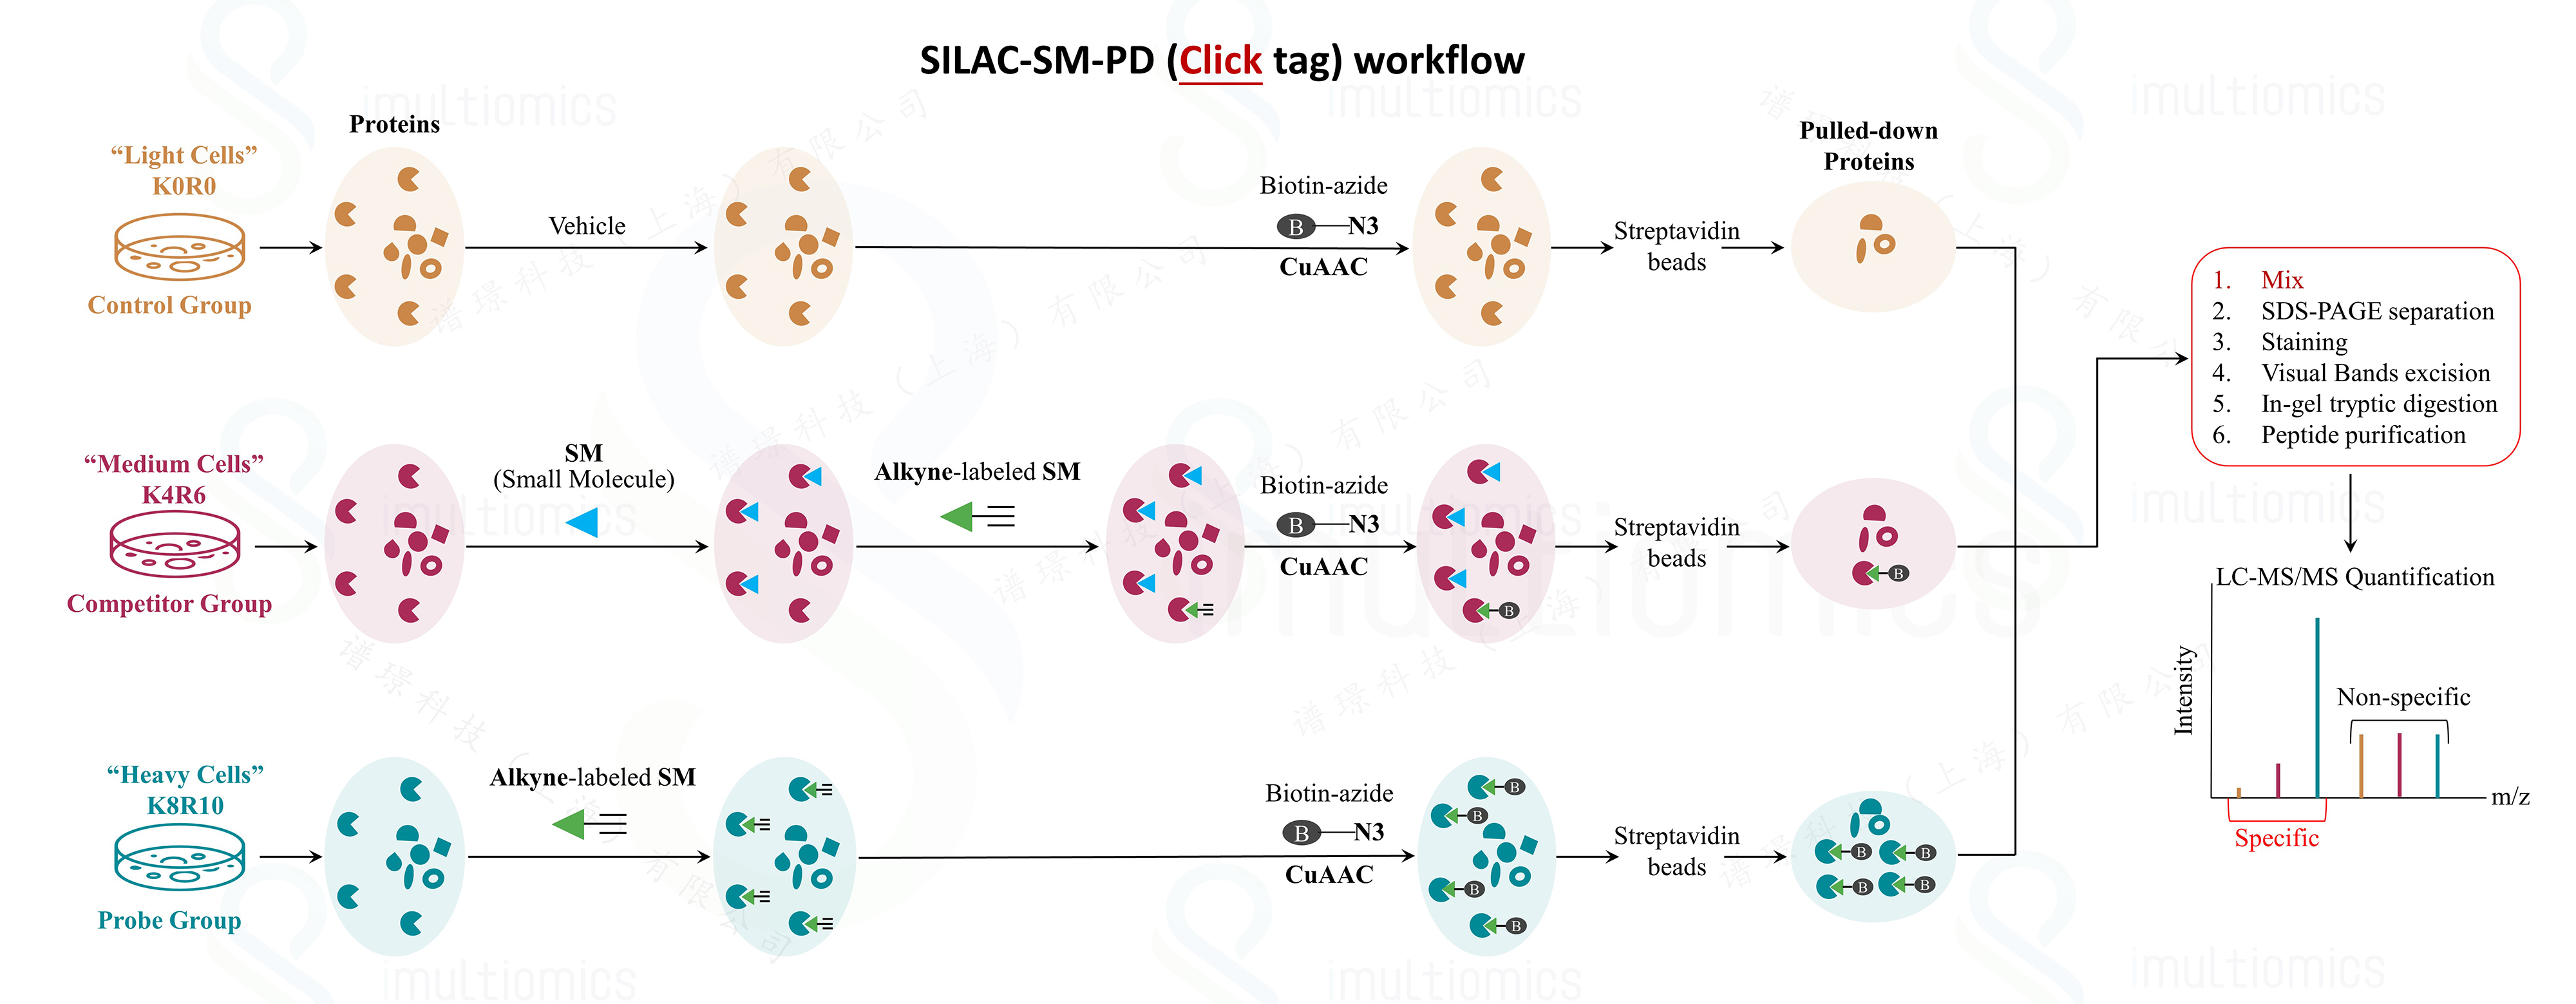 SILAC-SM-PD (Click-tag)